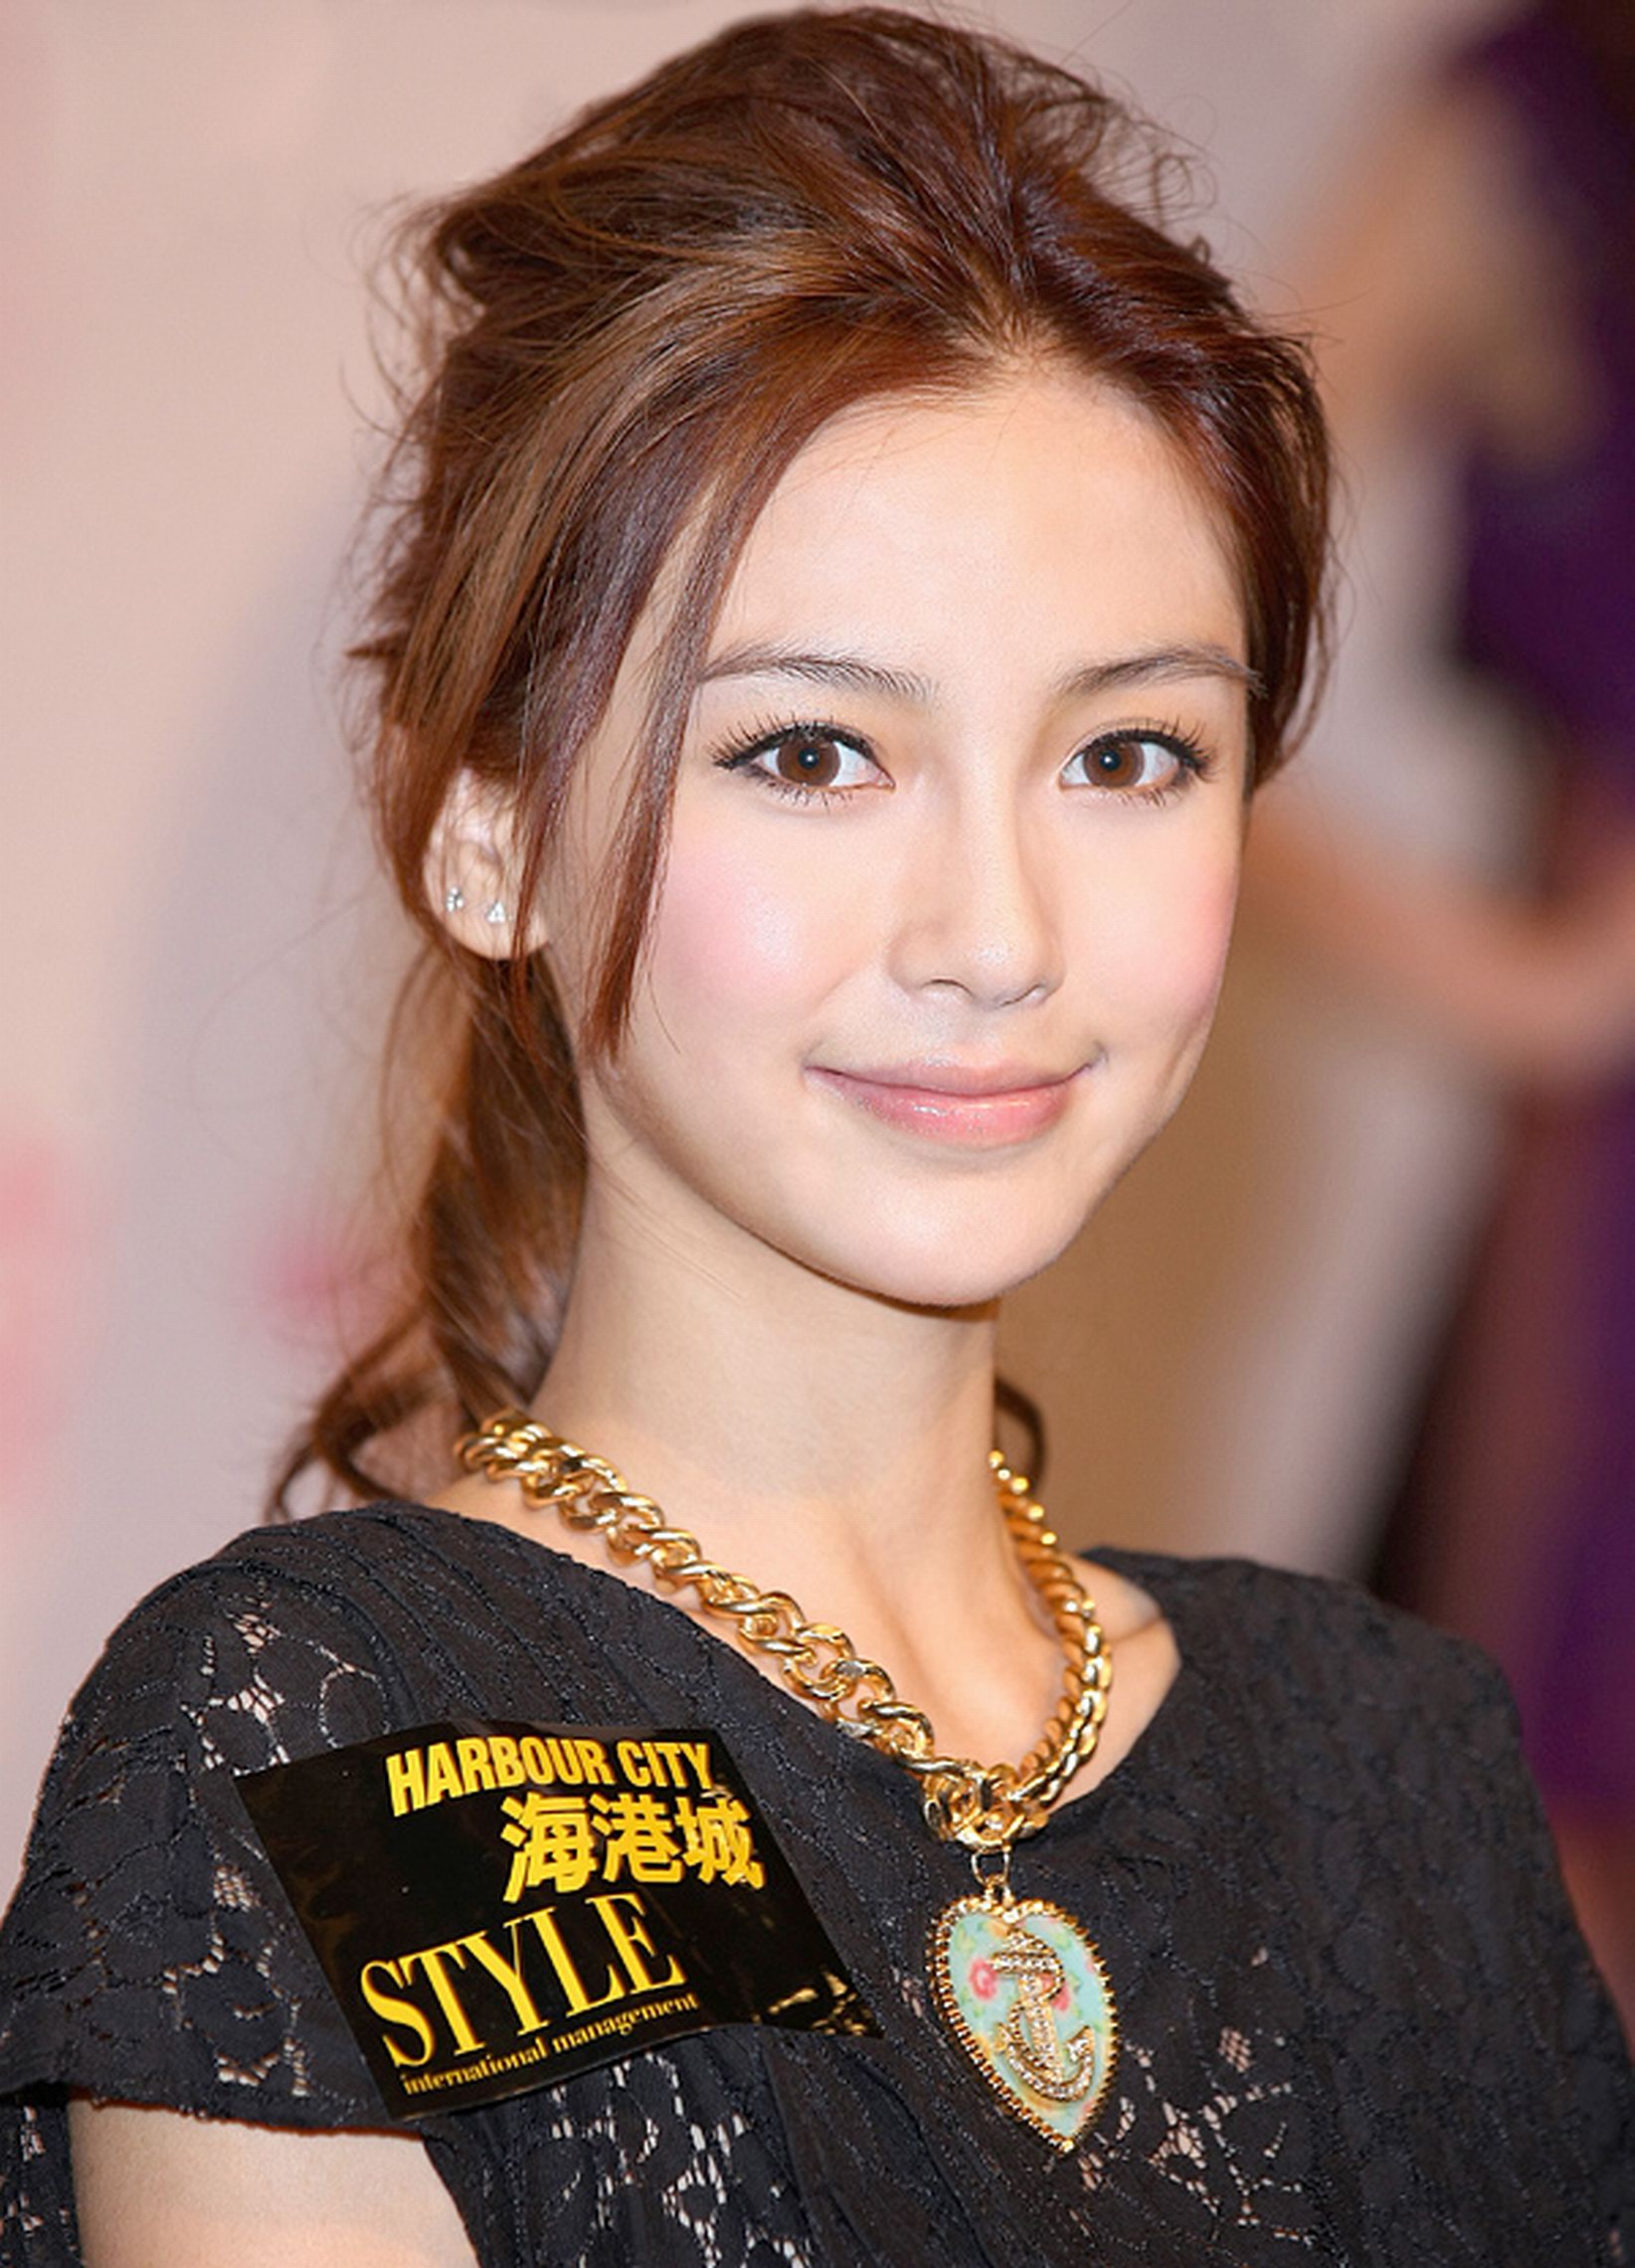 angelababy(杨颖)出生于上海市,华语影视女演员,时尚模特,瞧她那白皙